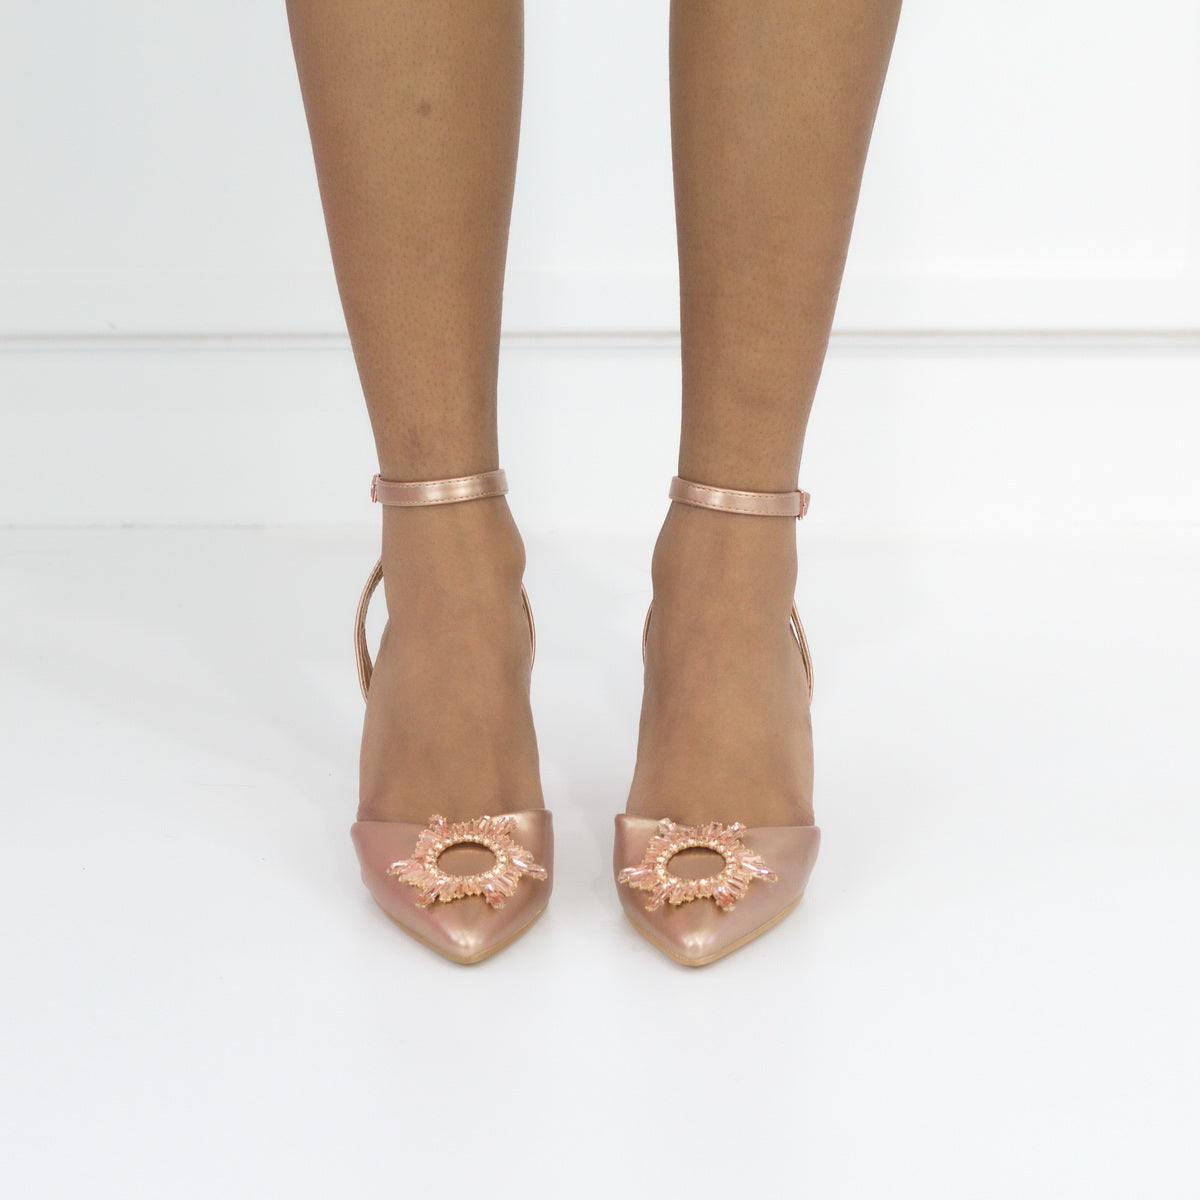 Rose gold mid heel 7cm SATIN PU with trim muadi